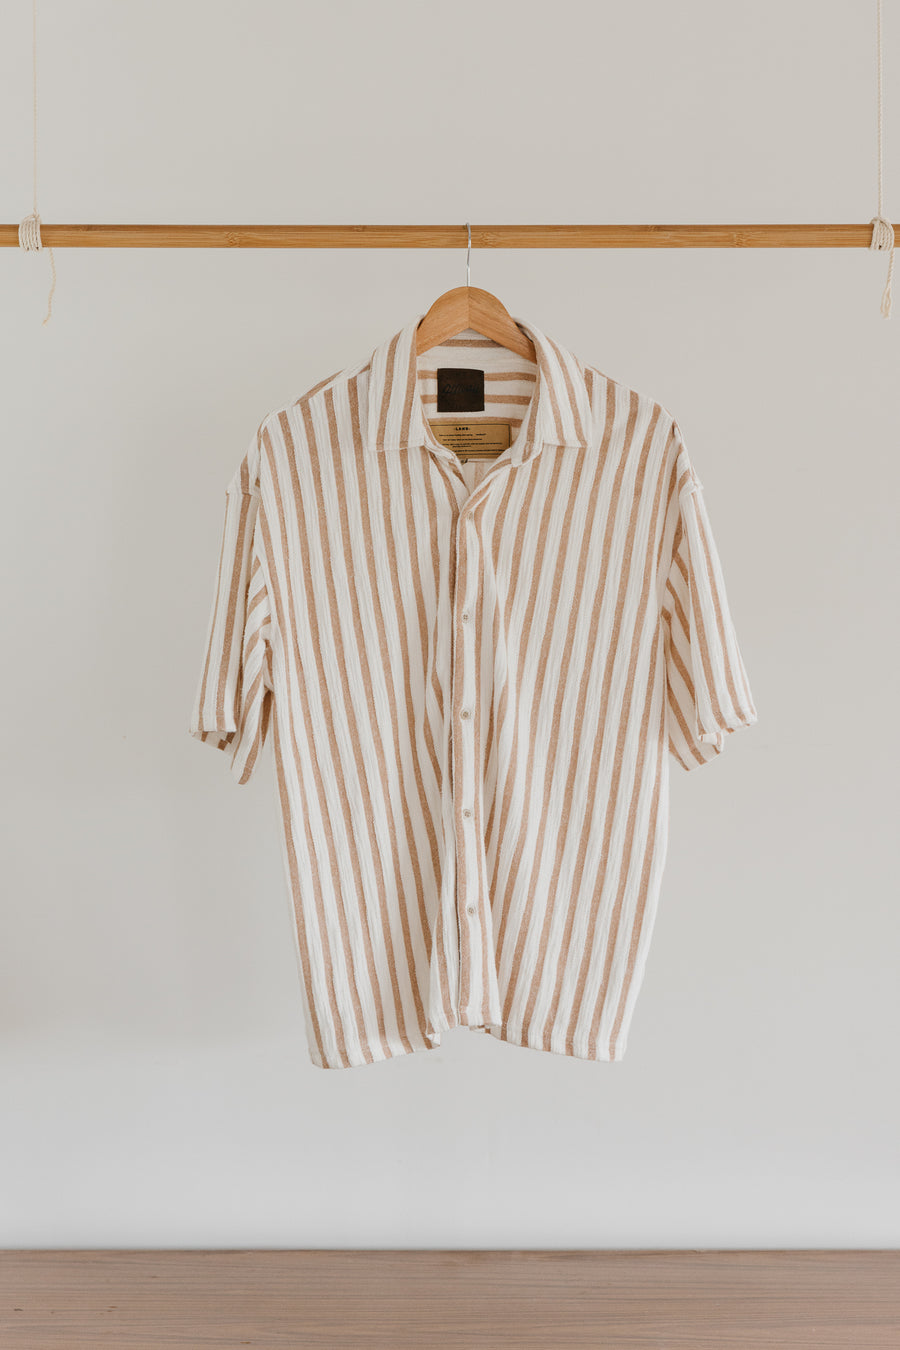 Lane - Stripe Textured Short Sleeve Shirt - Brown